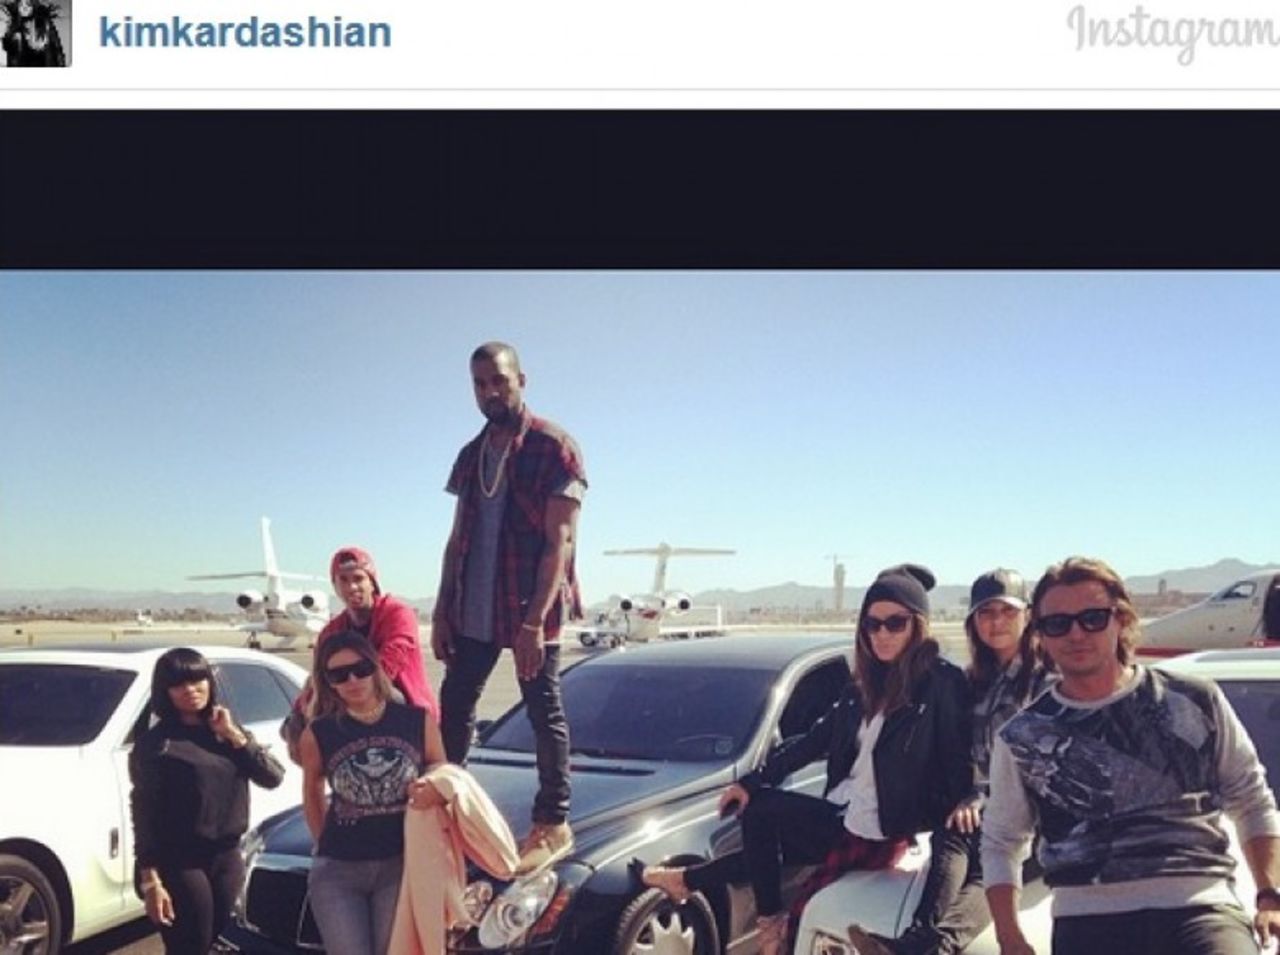  Millones de seguidores Instagram de Kim Kardashian obtuvieron una mirada del interior en su viaje de cumpleaños a Las Vegas en octubre. Y esta foto no es la única de las fotos de Kim que se apodera del Internet. 